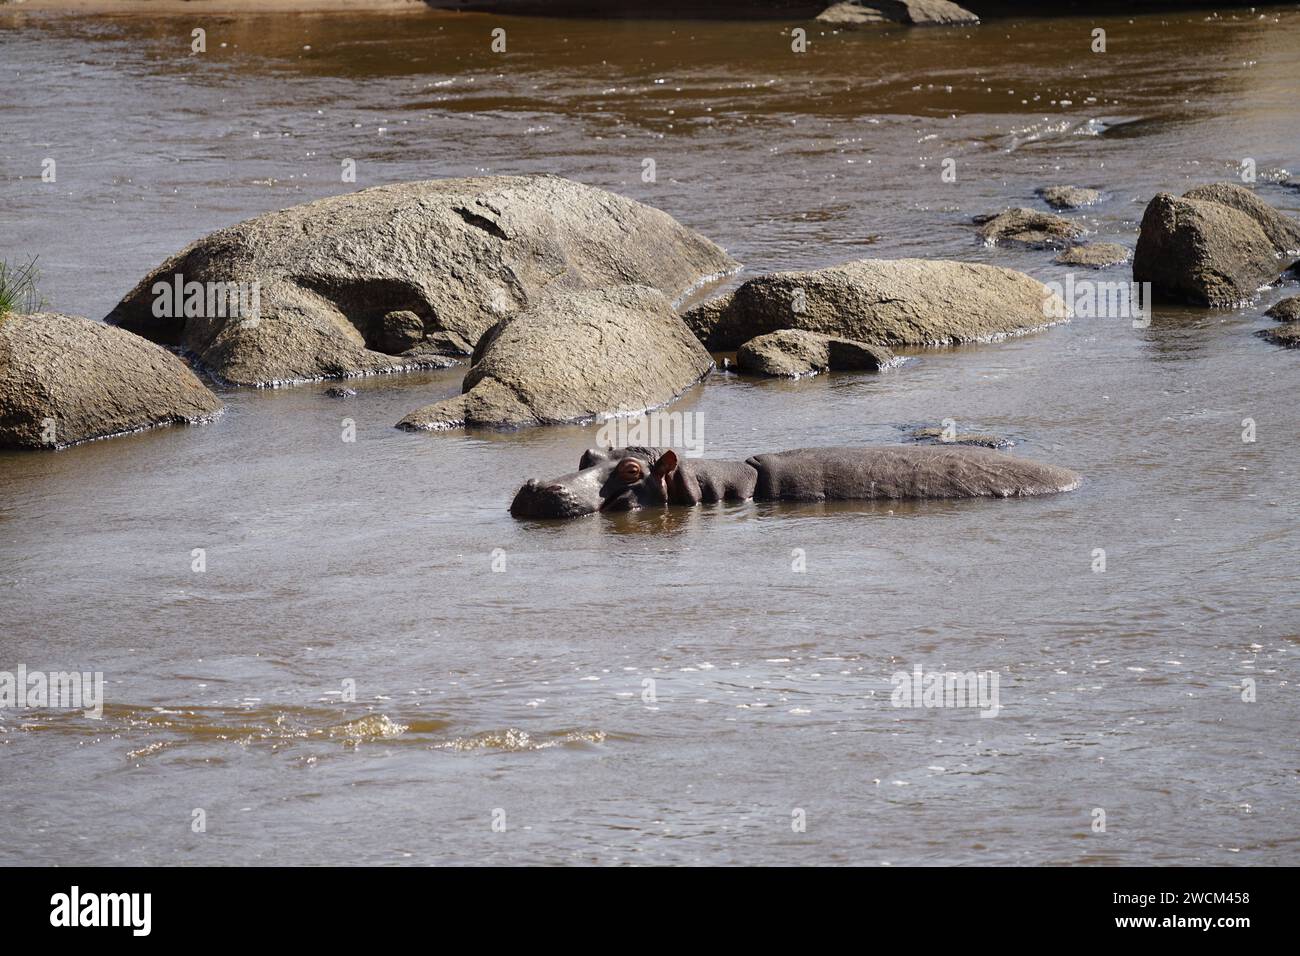 single hippo in river Stock Photo